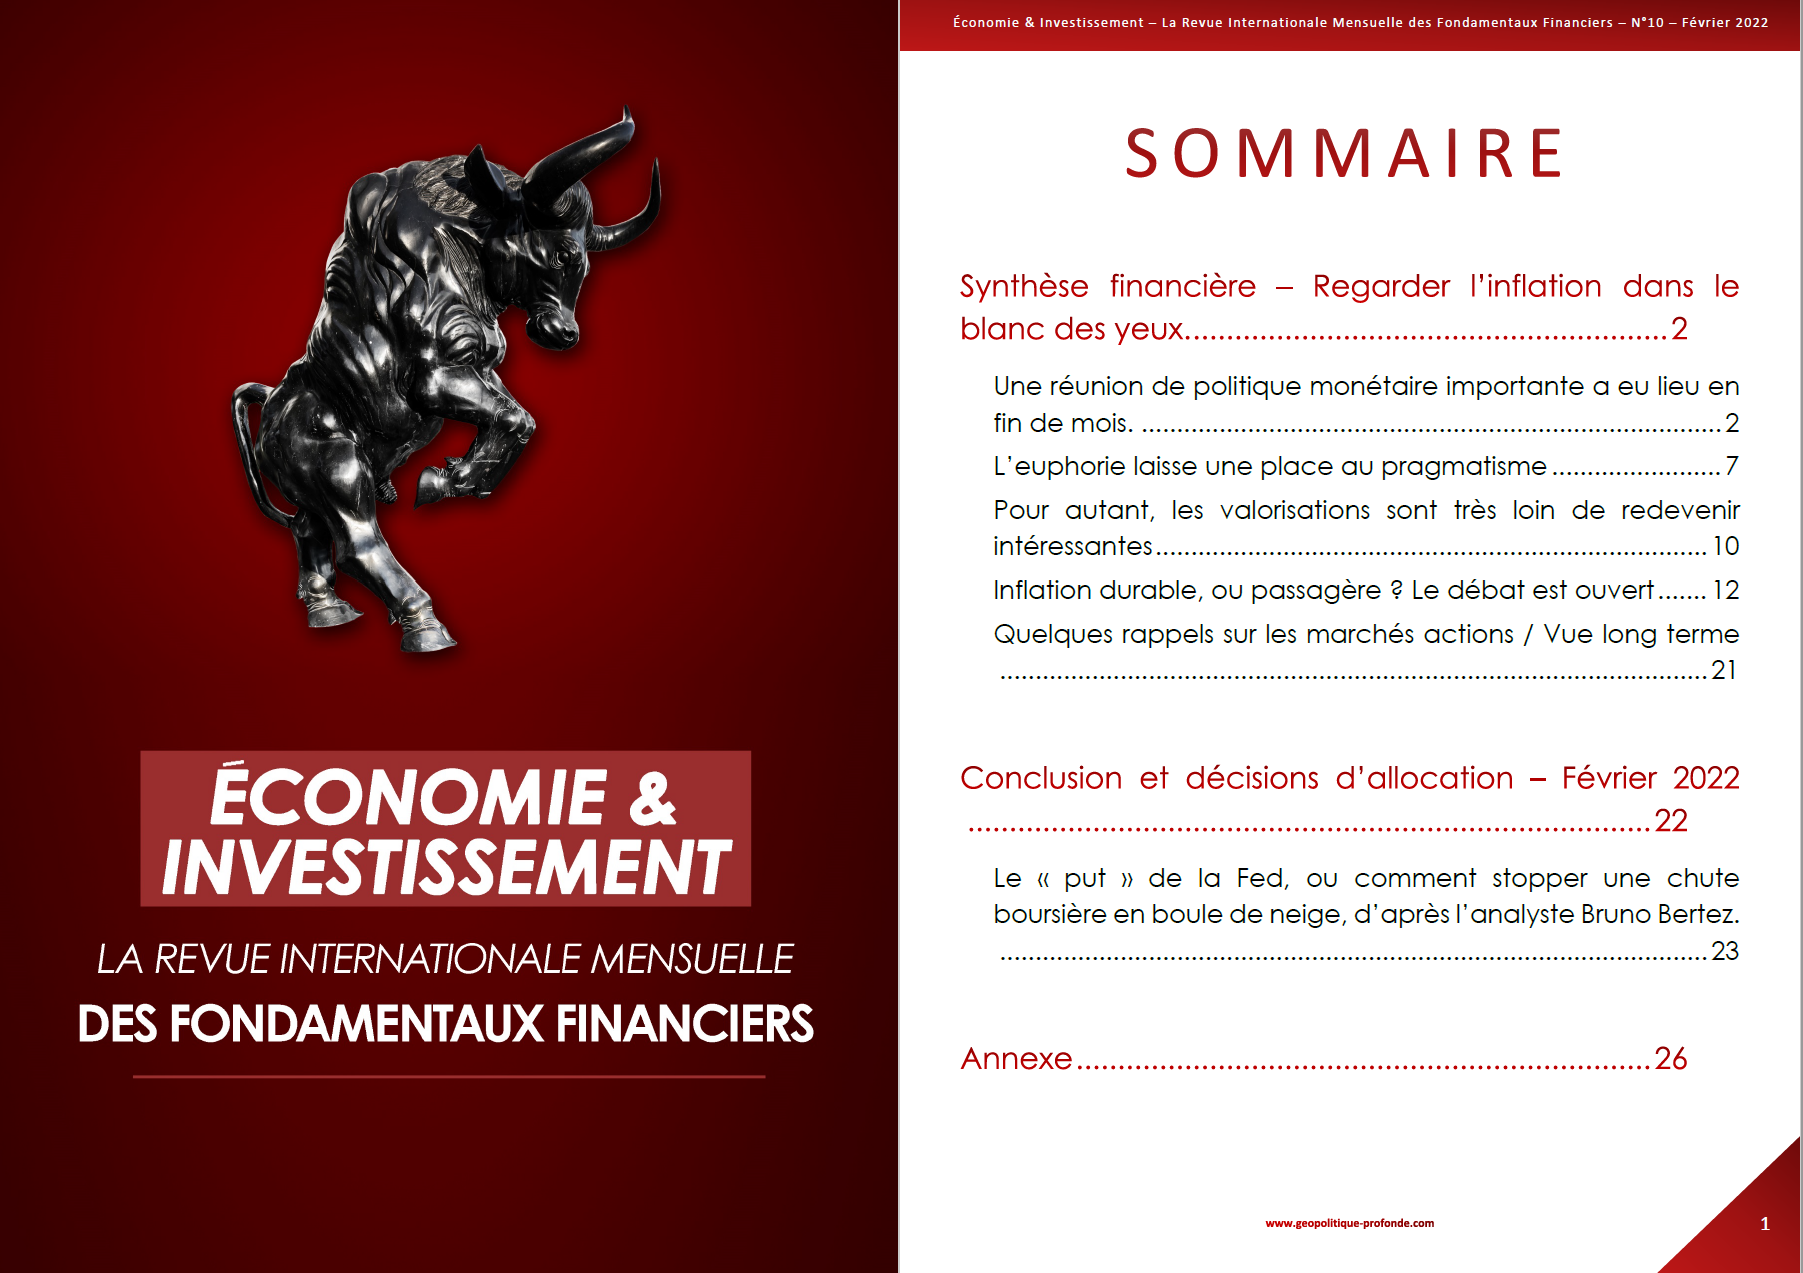 Sommaire Economie & Investissement la revue mensuelle de Géopolitique Profonde